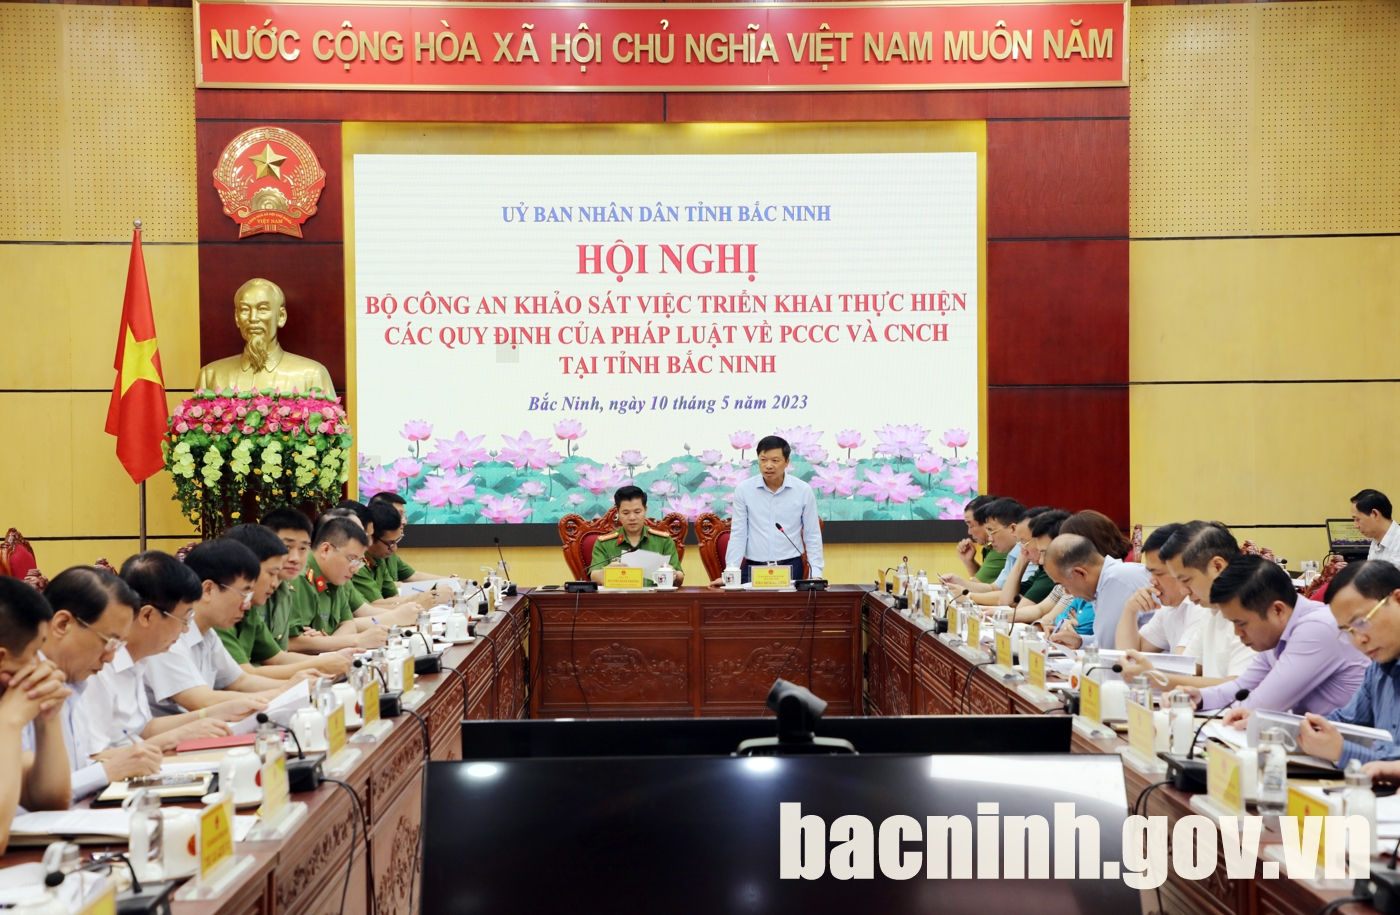 Khảo sát thực hiện các quy định của pháp luật về PCCC&CNCH tại tỉnh Bắc Ninh